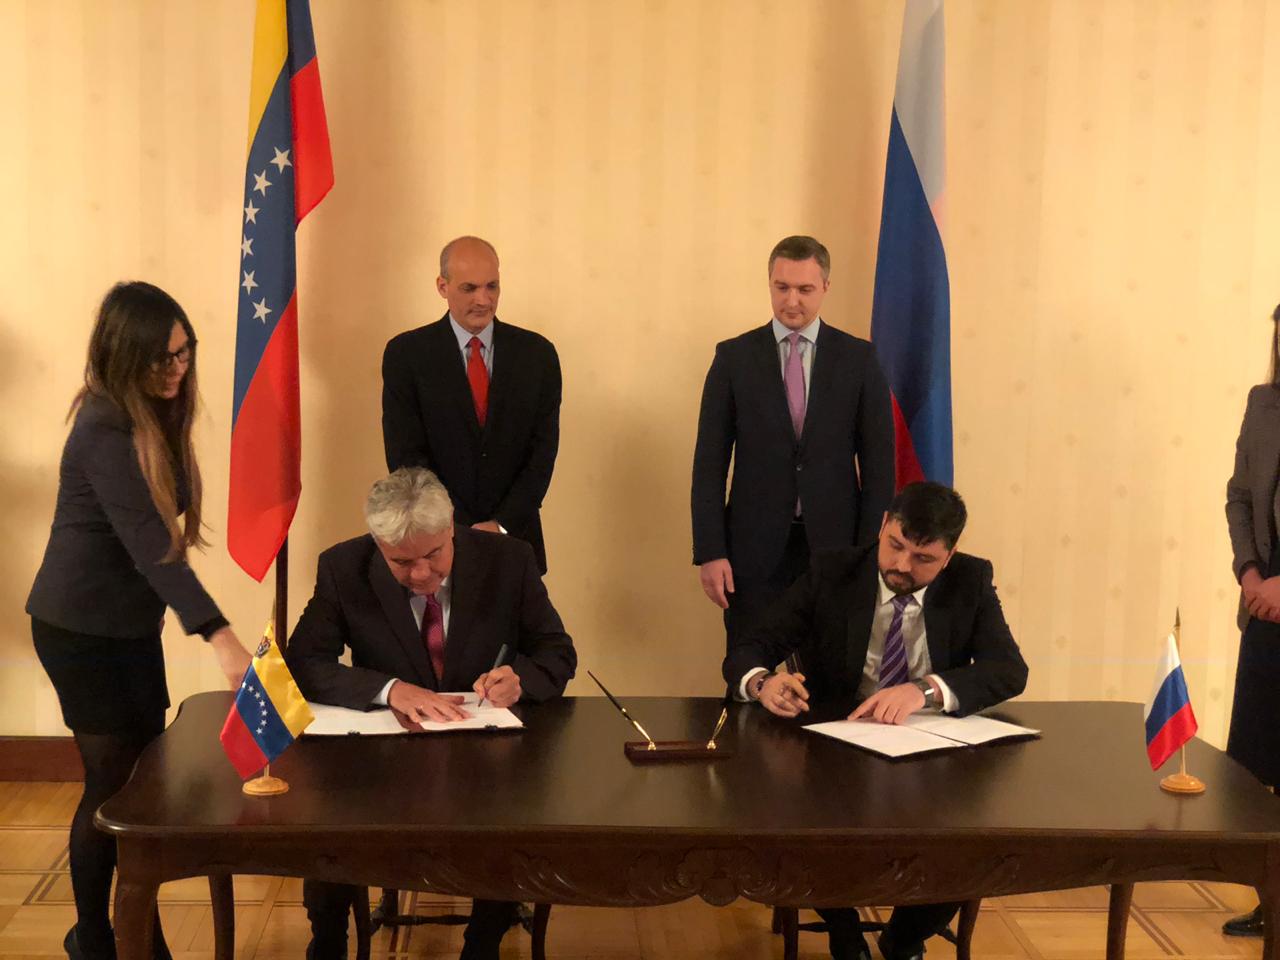 La jornada entre Rusia y Venezuela permitió establecer una matriz de inversión para captar capitales y mejorar la balanza comercial.